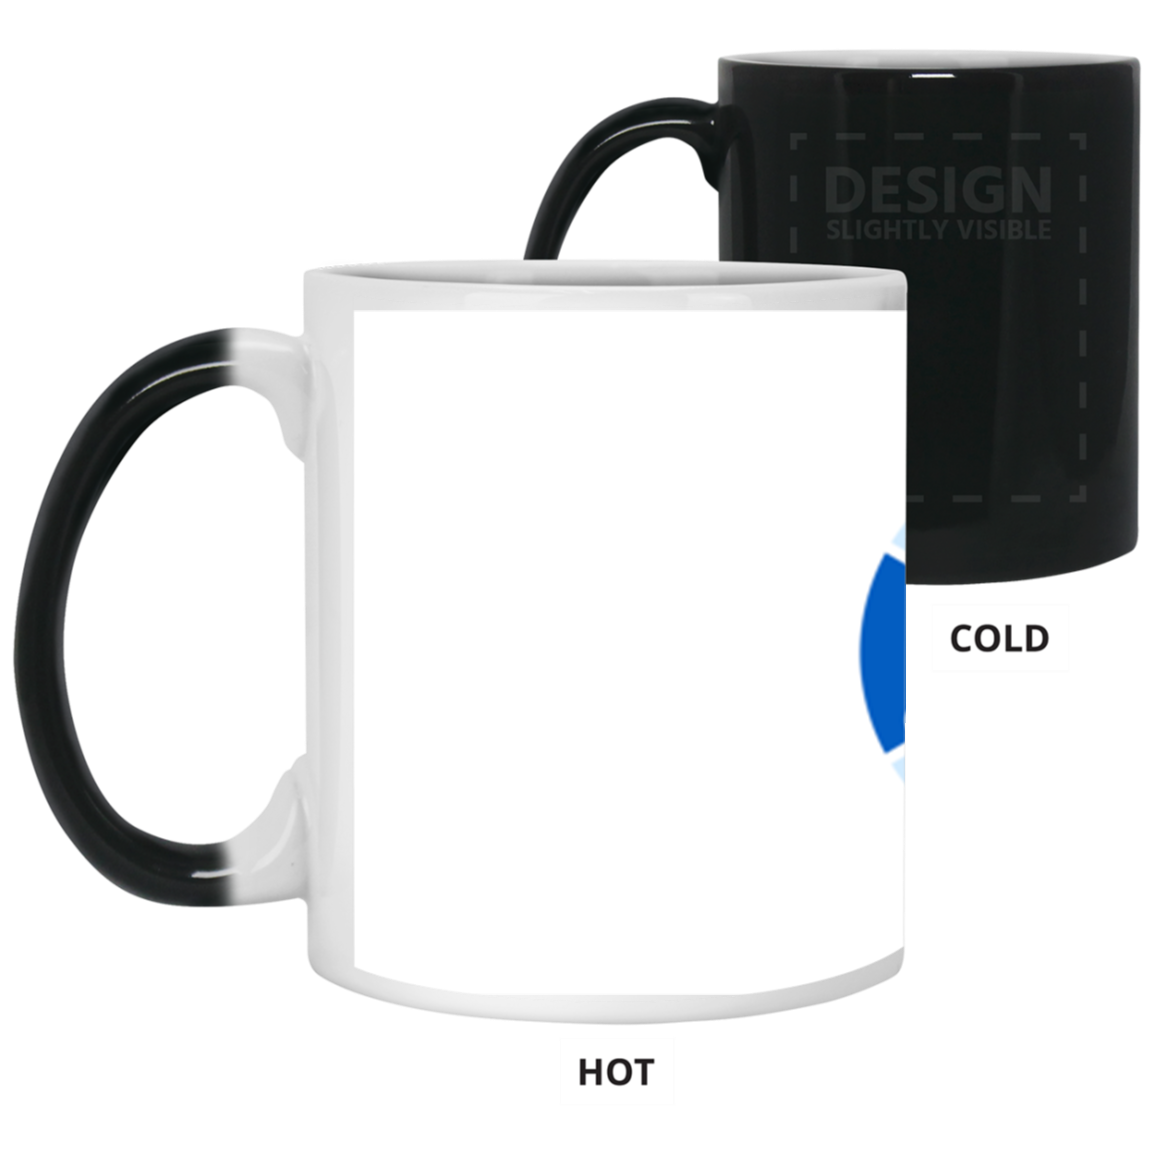 Cloud Printer Mug Sample